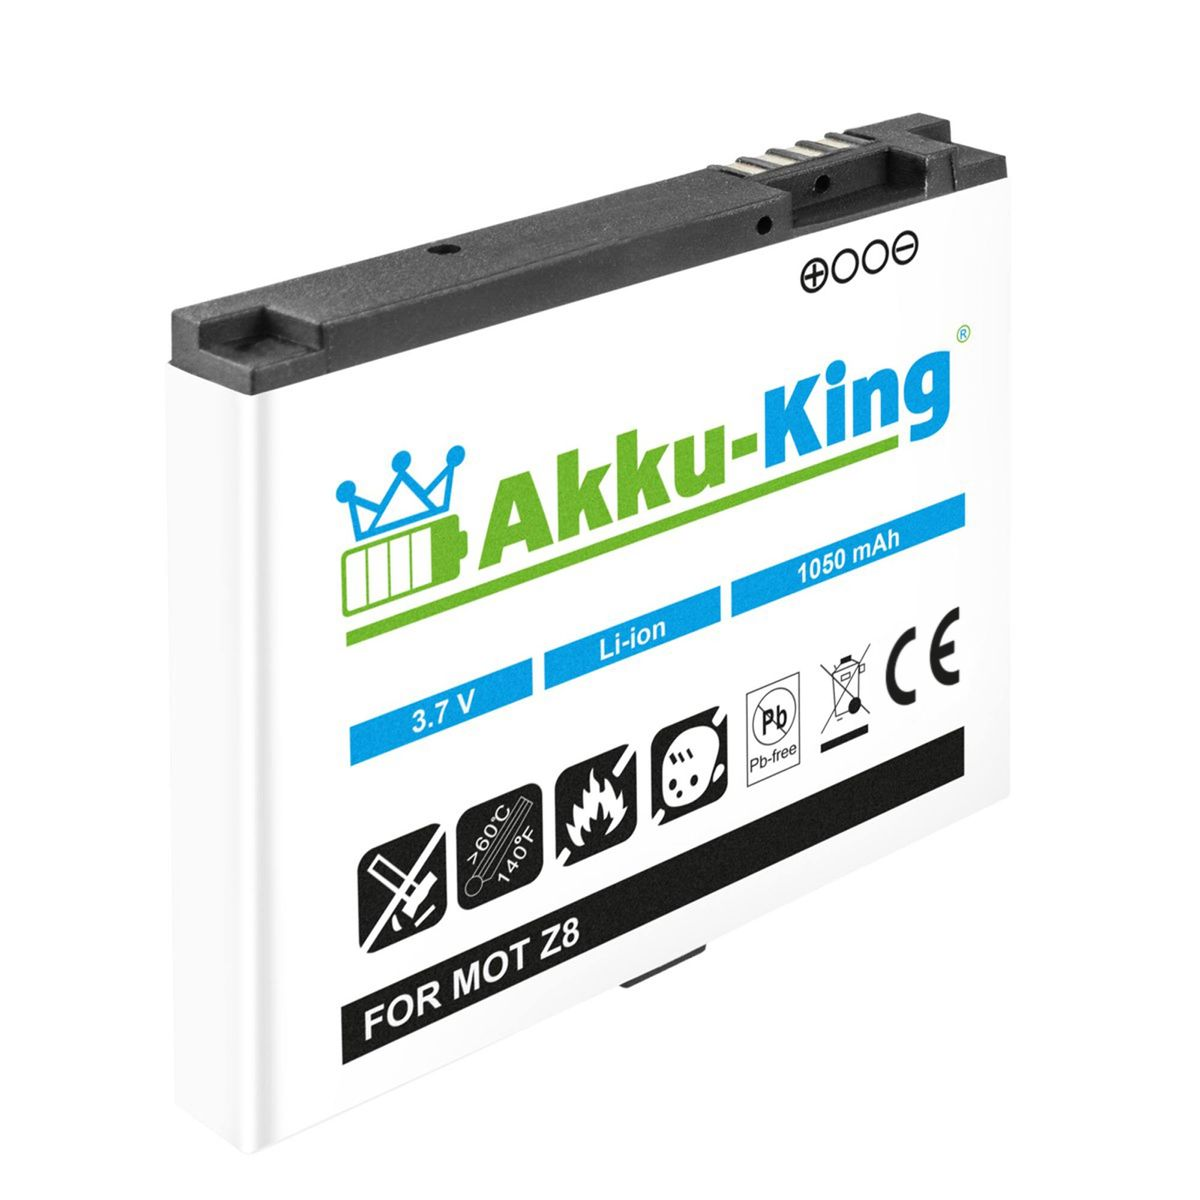 AKKU-KING Akku kompatibel mit BK70 Volt, Li-Ion 3.7 1050mAh Handy-Akku, Motorola